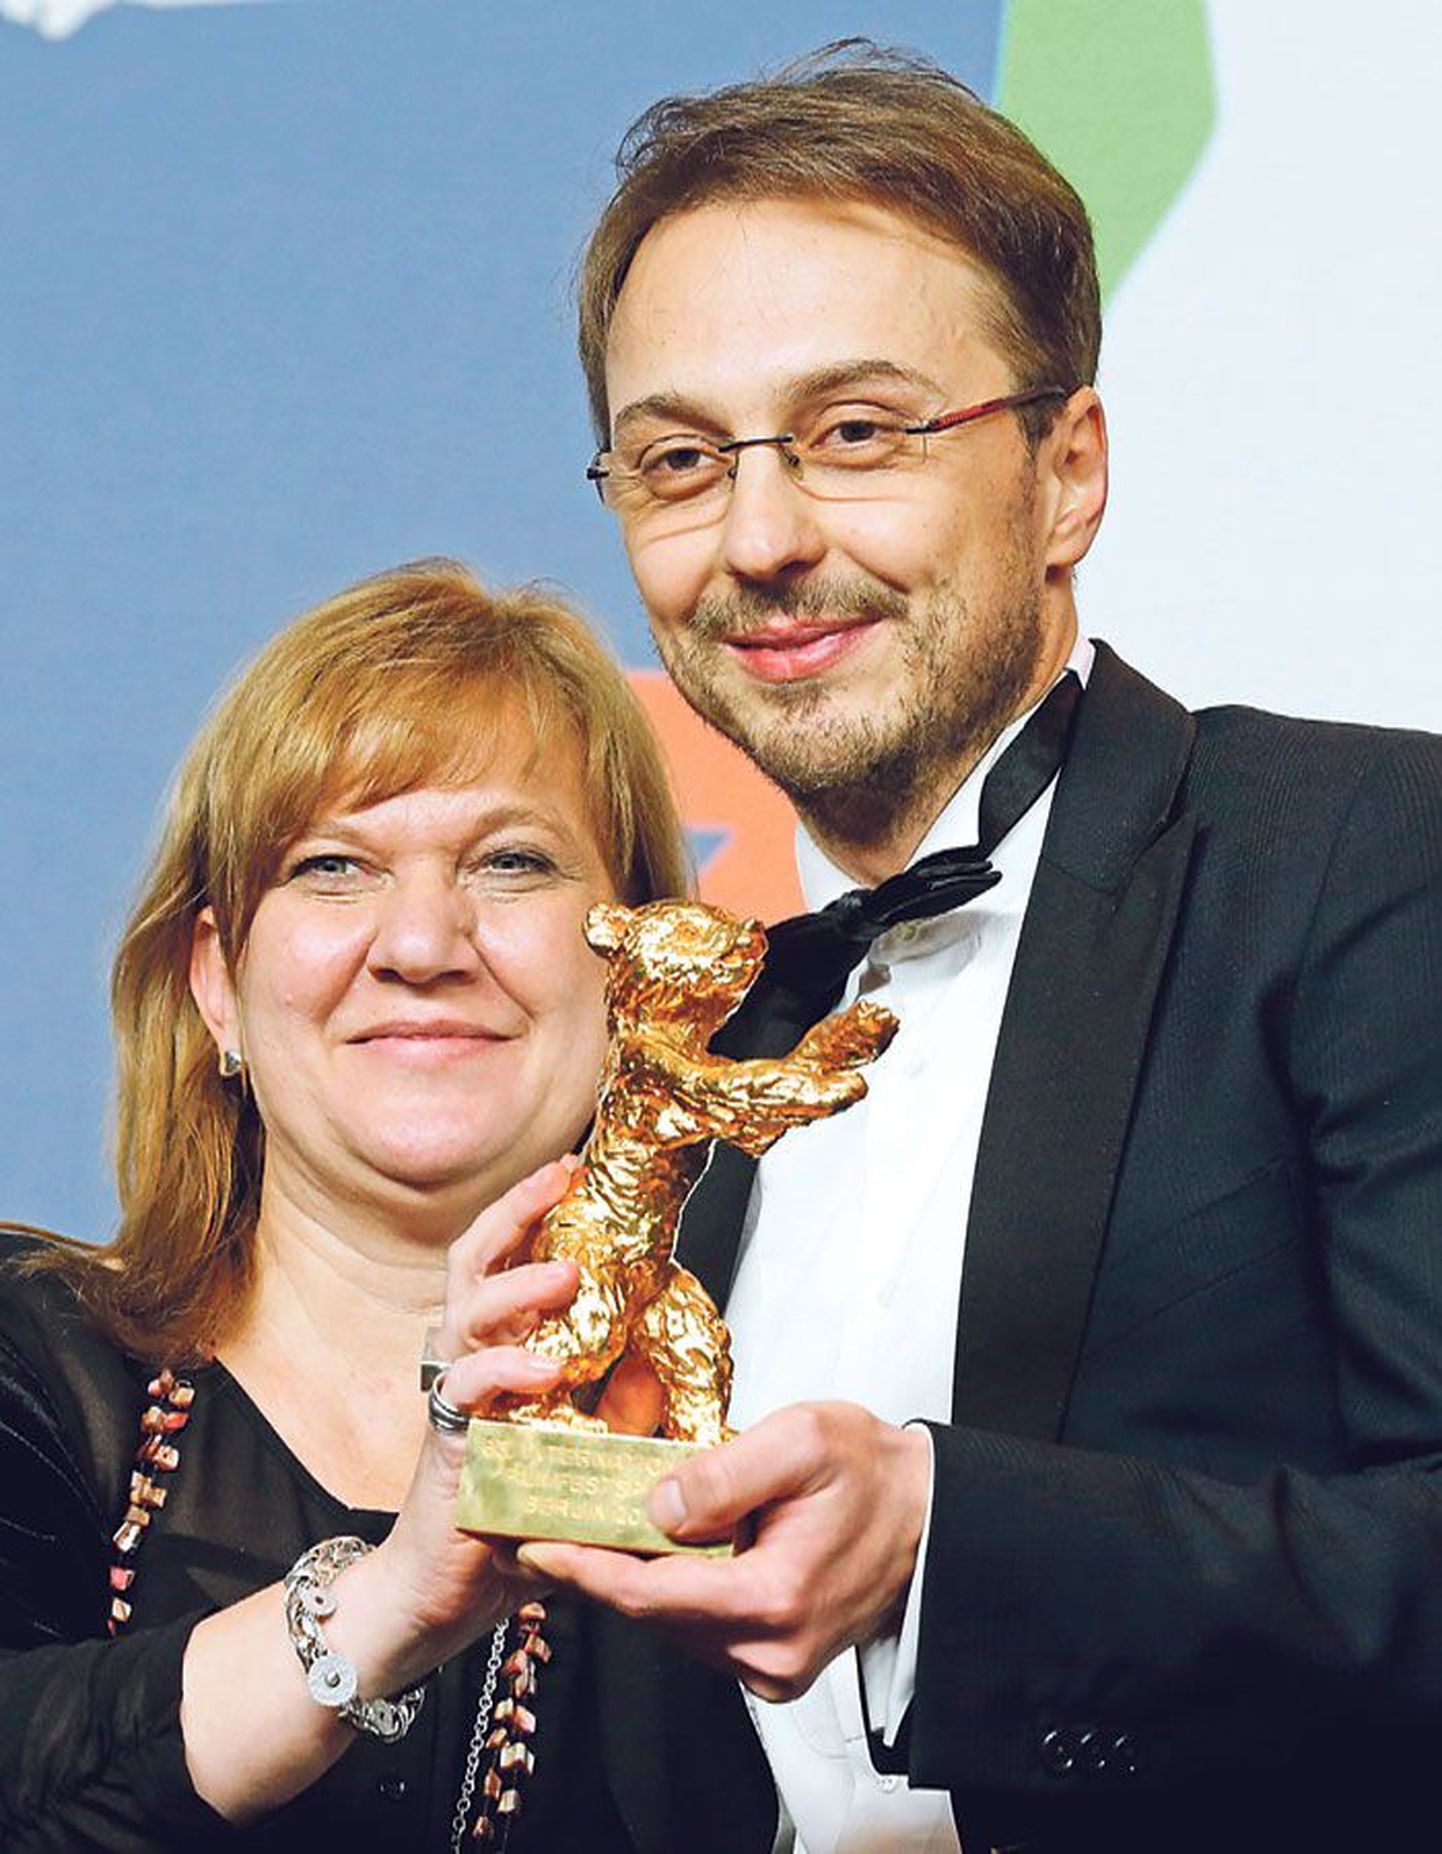 На кинофестивале в Берлине румынский режиссер Калин Питер Нецер и продюсер Ада Соломон получили «Золотого медведя» за фильм «Поза ребенка»